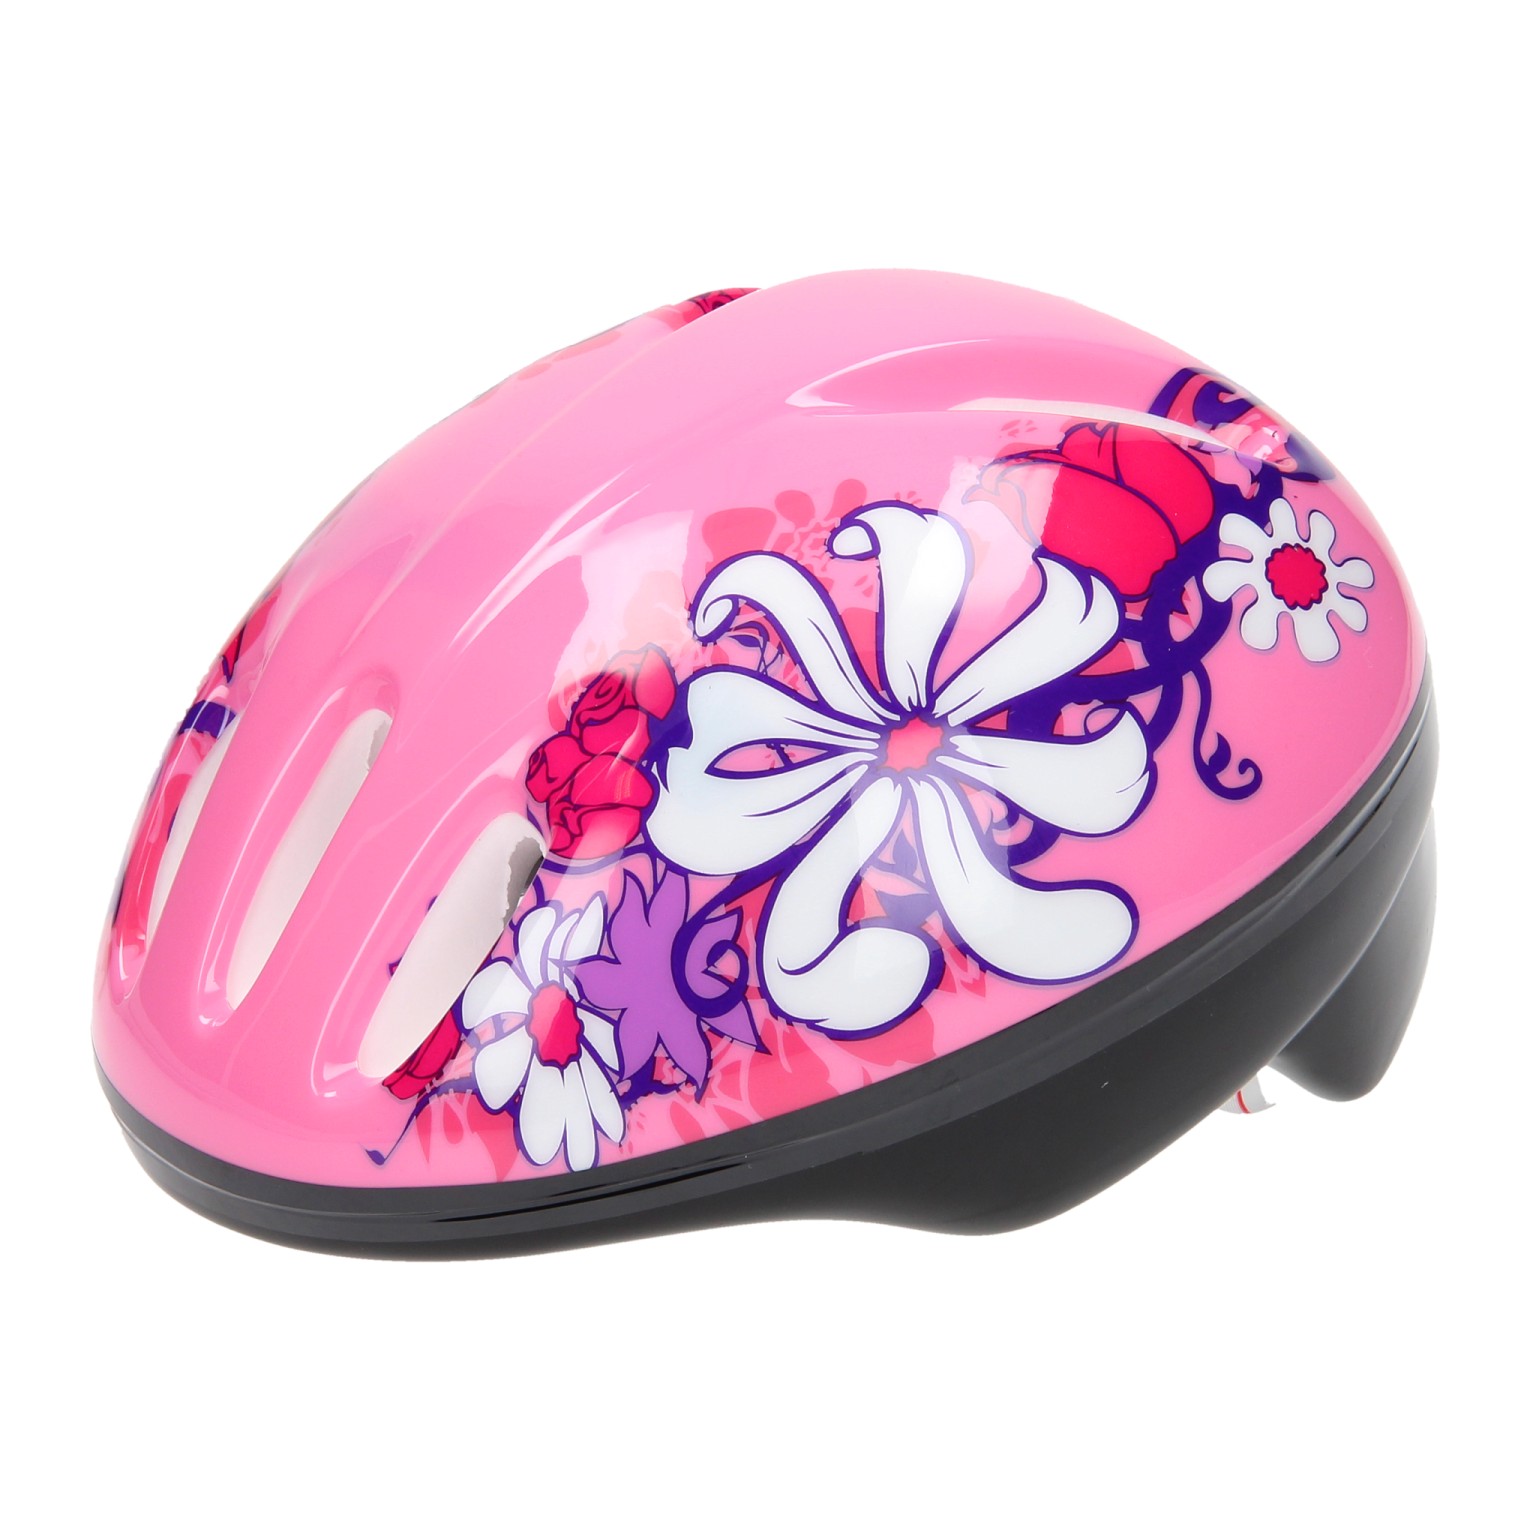 Fahrradhelm, Größe 50-54 - Pink / Blumenweiß